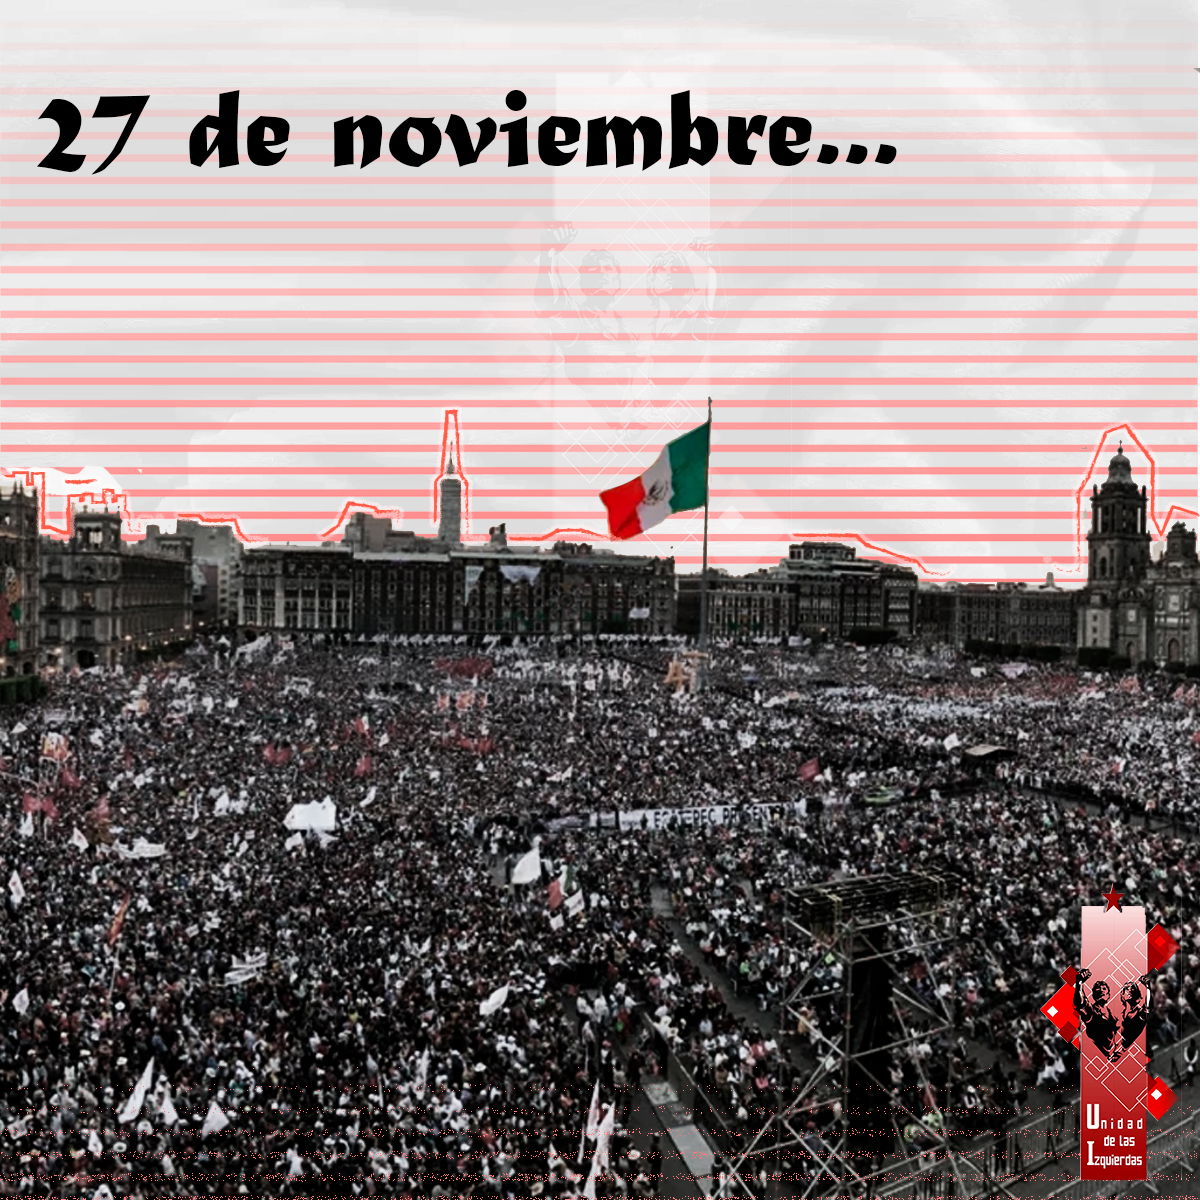 27 de noviembre, la marcha histórica